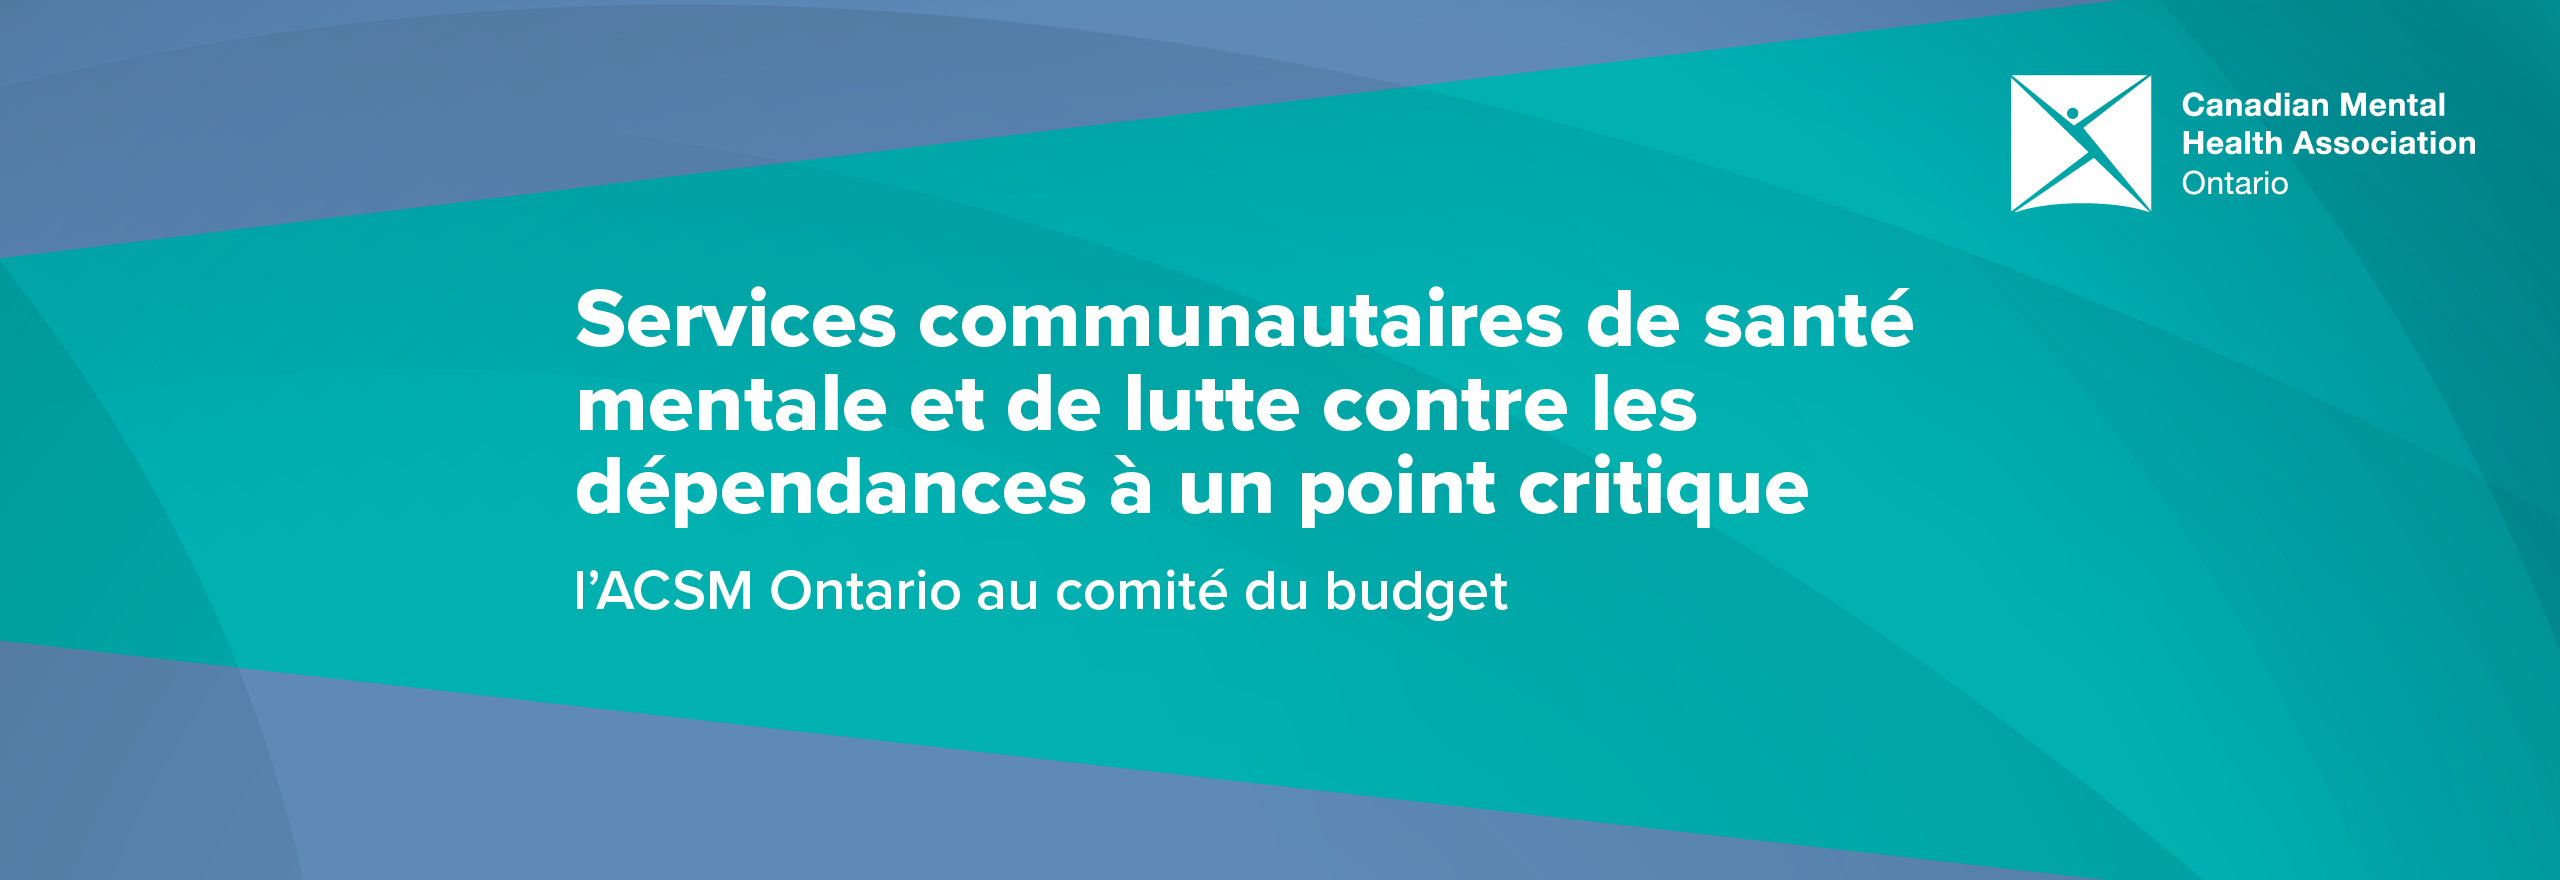 Services communautaires de santé mentale et de lutte contre les dépendances à un point critique : l’ACSM Ontario au comité du budget